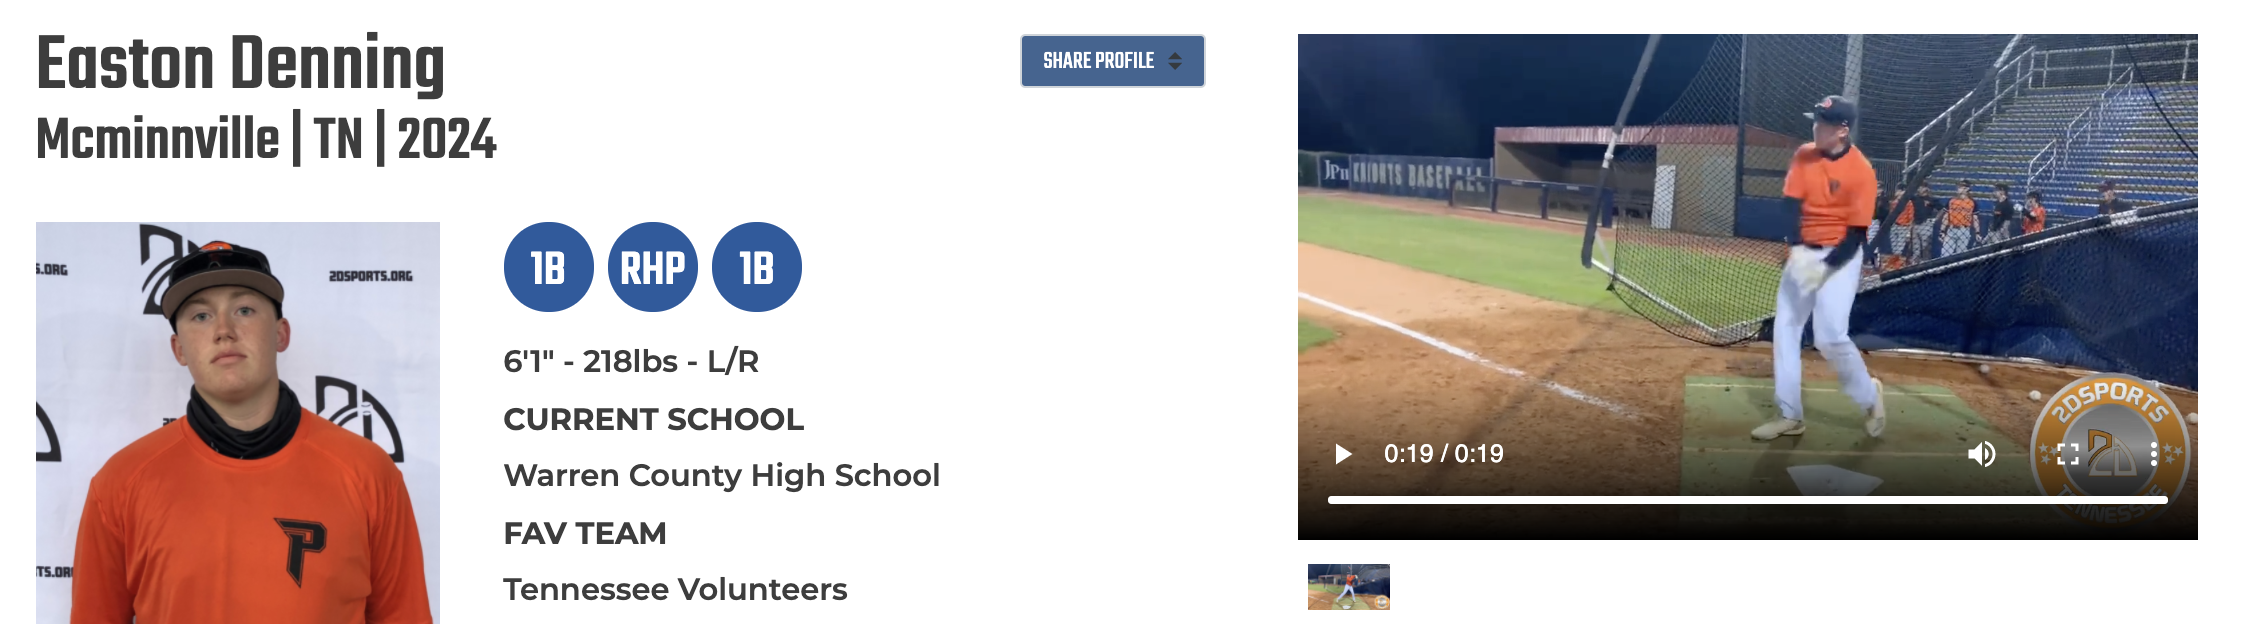 Easton Denning 2D Baseball Profile